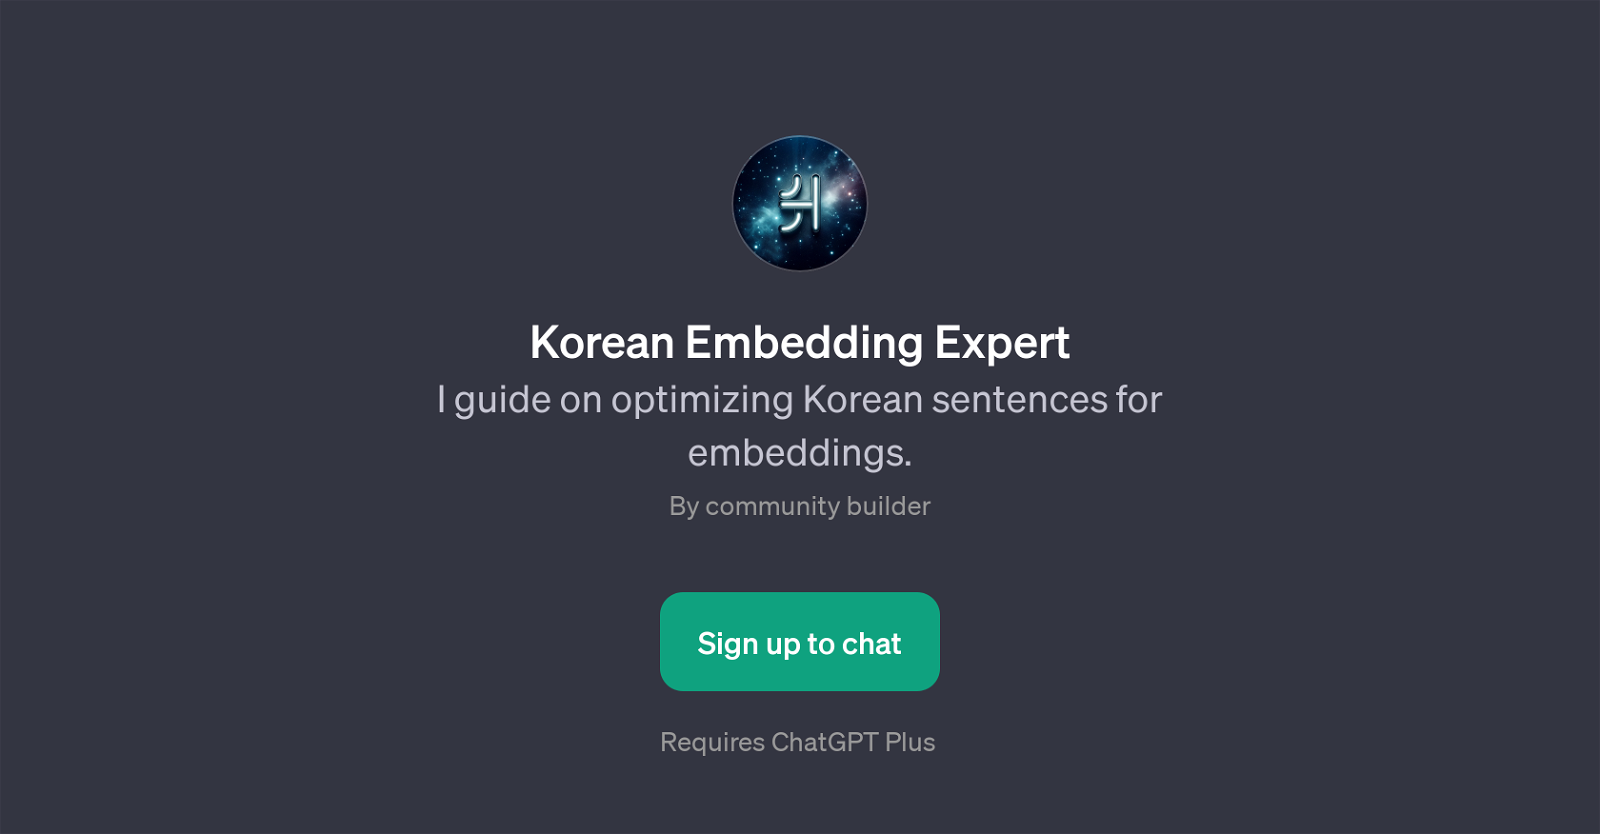 Korean Embedding Expert website